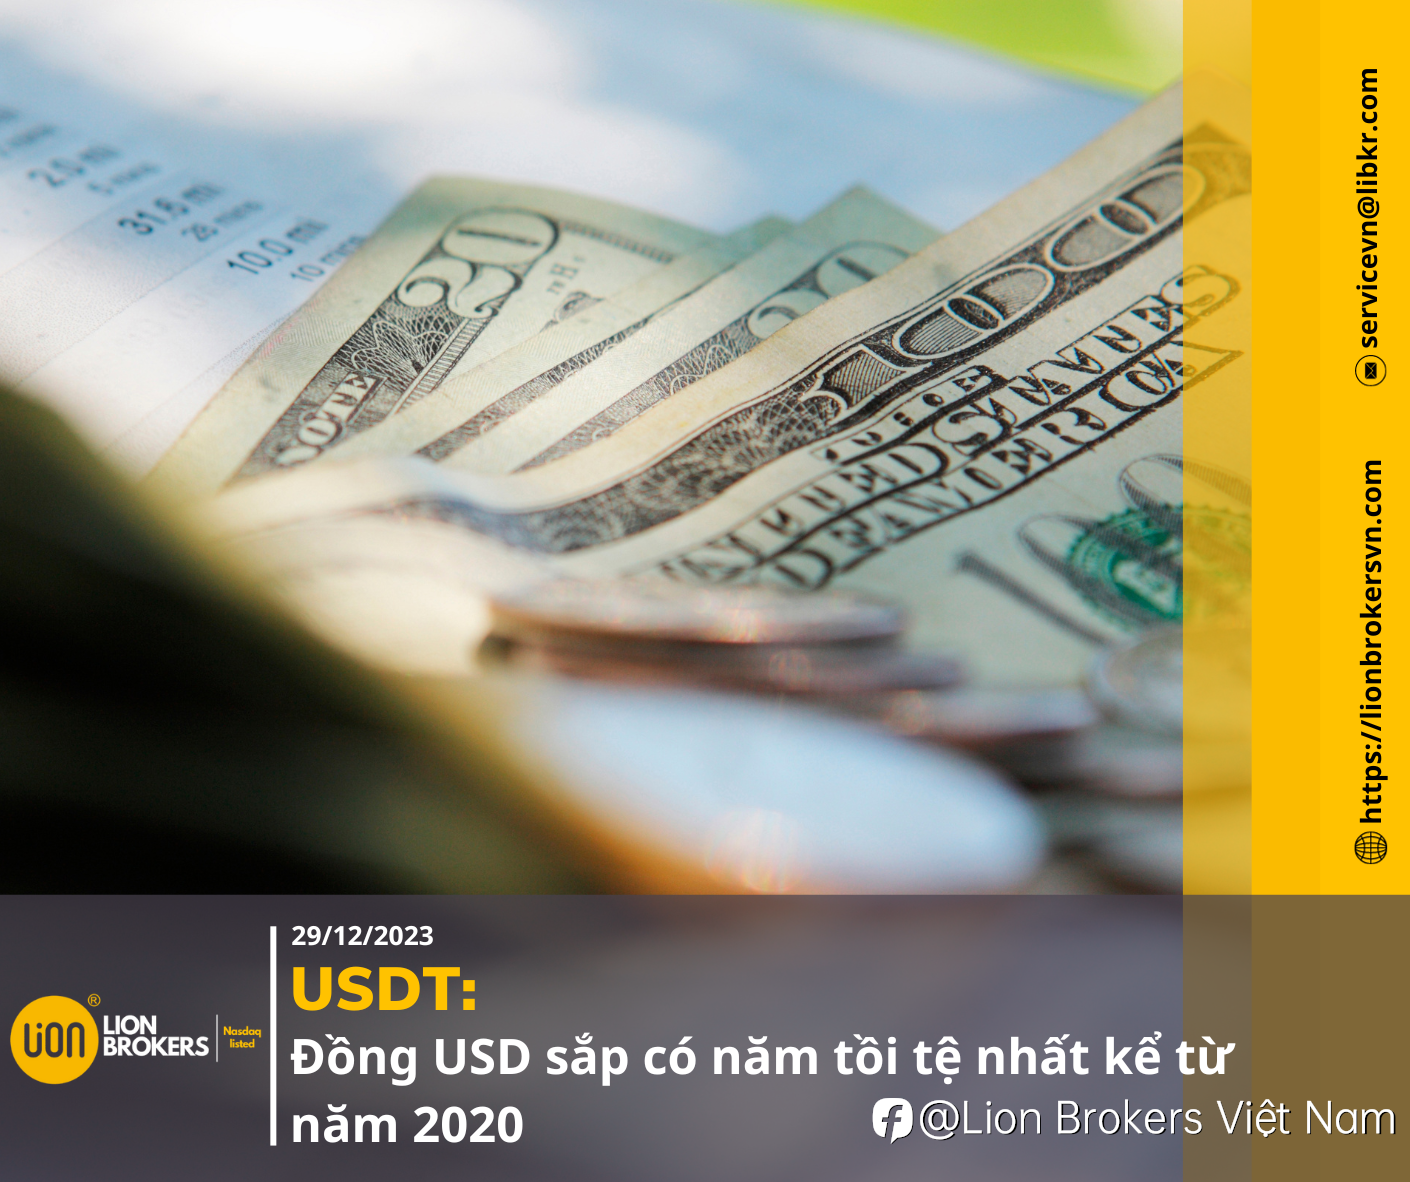 USDT: ĐỒNG USD SẮP CÓ NĂM TỒI TỆ NHẤT KỂ TỪ 2020